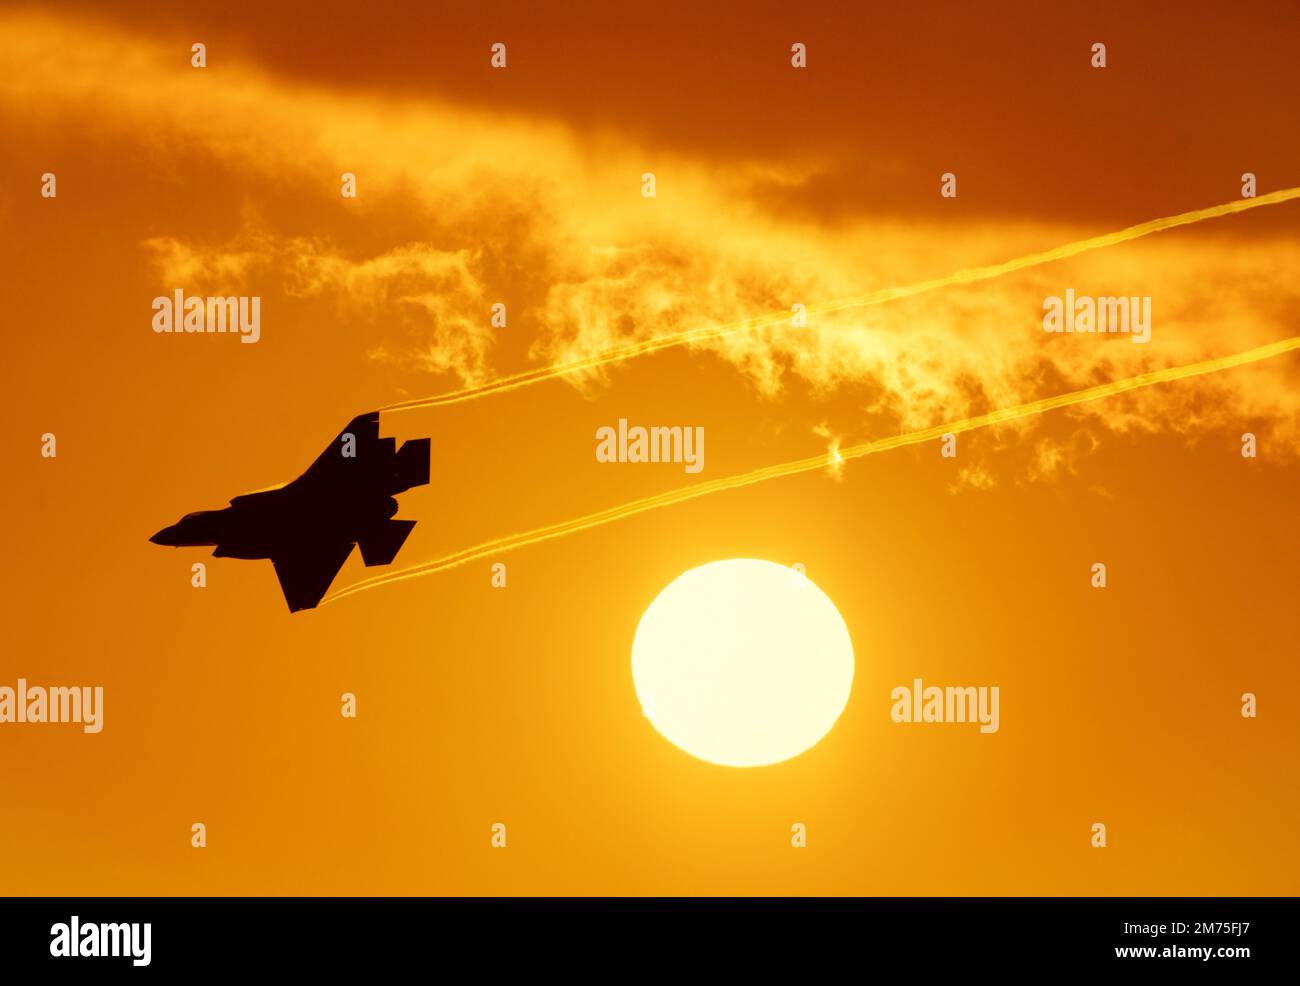 Un avion de chasse au coucher du soleil. Vapeur de chasse militaire moderne de cinquième génération traversant le soleil couchant. Avion de chasse au ciel orange Banque D'Images